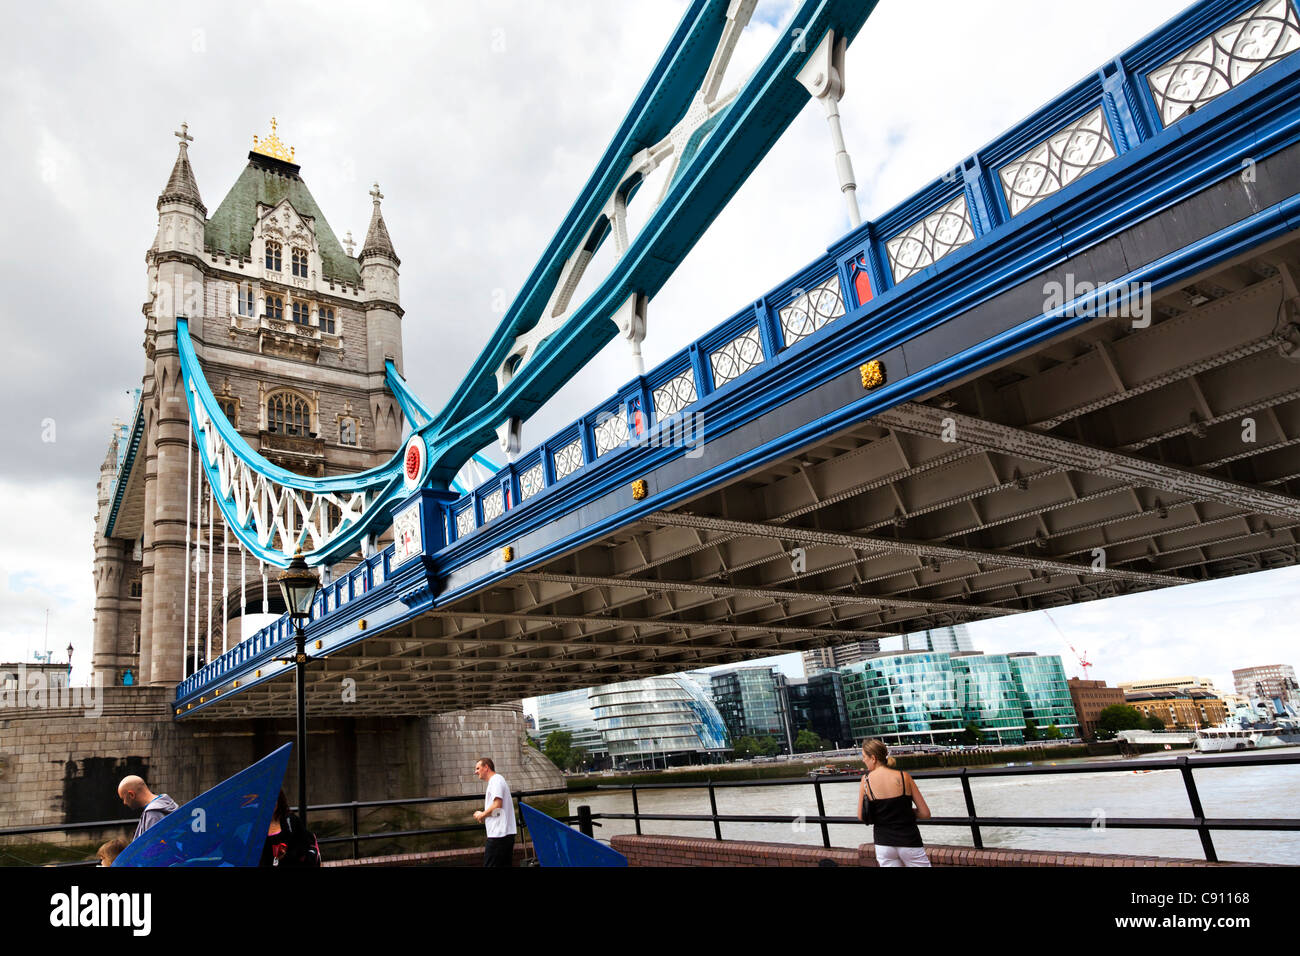 Orizzontale basso angolo di visione di un ponte e il Tower Bridge di Londra, Regno Unito, Inghilterra Foto Stock